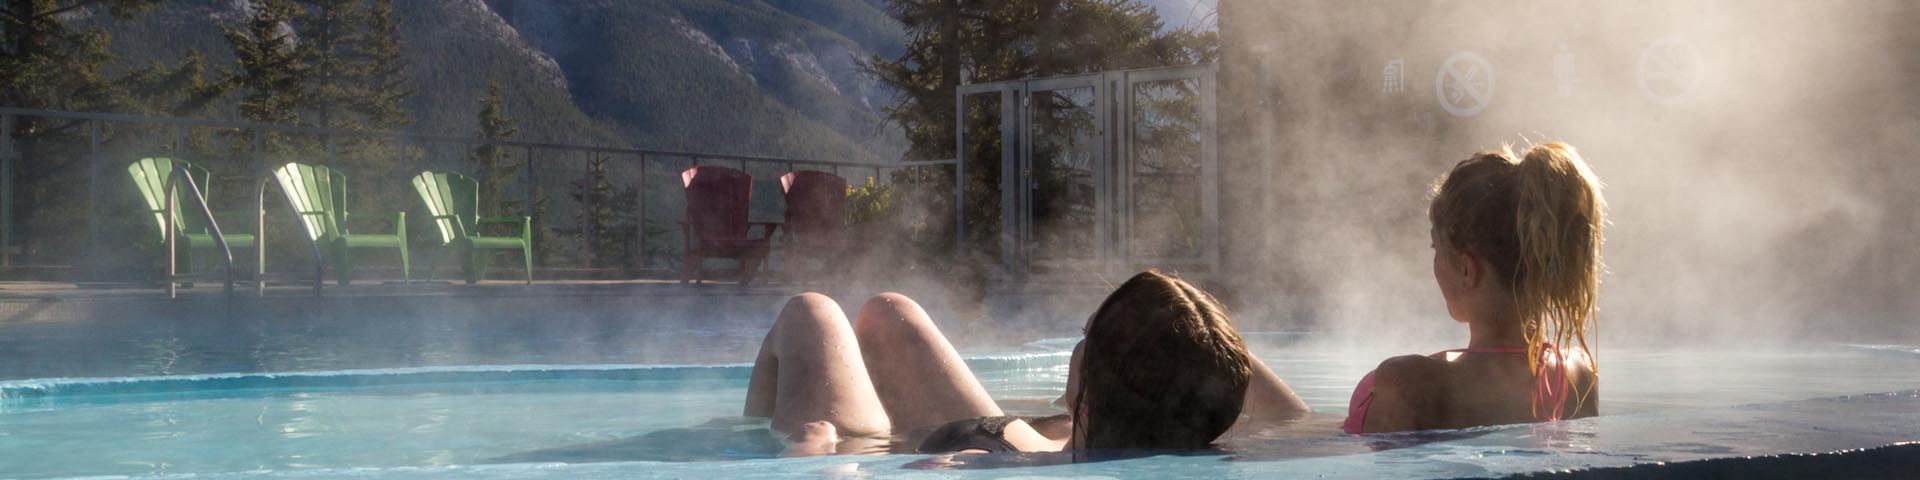 Deux jeunes femmes profitent du bon temps aux sources thermales Upper Hot Springs de Banff